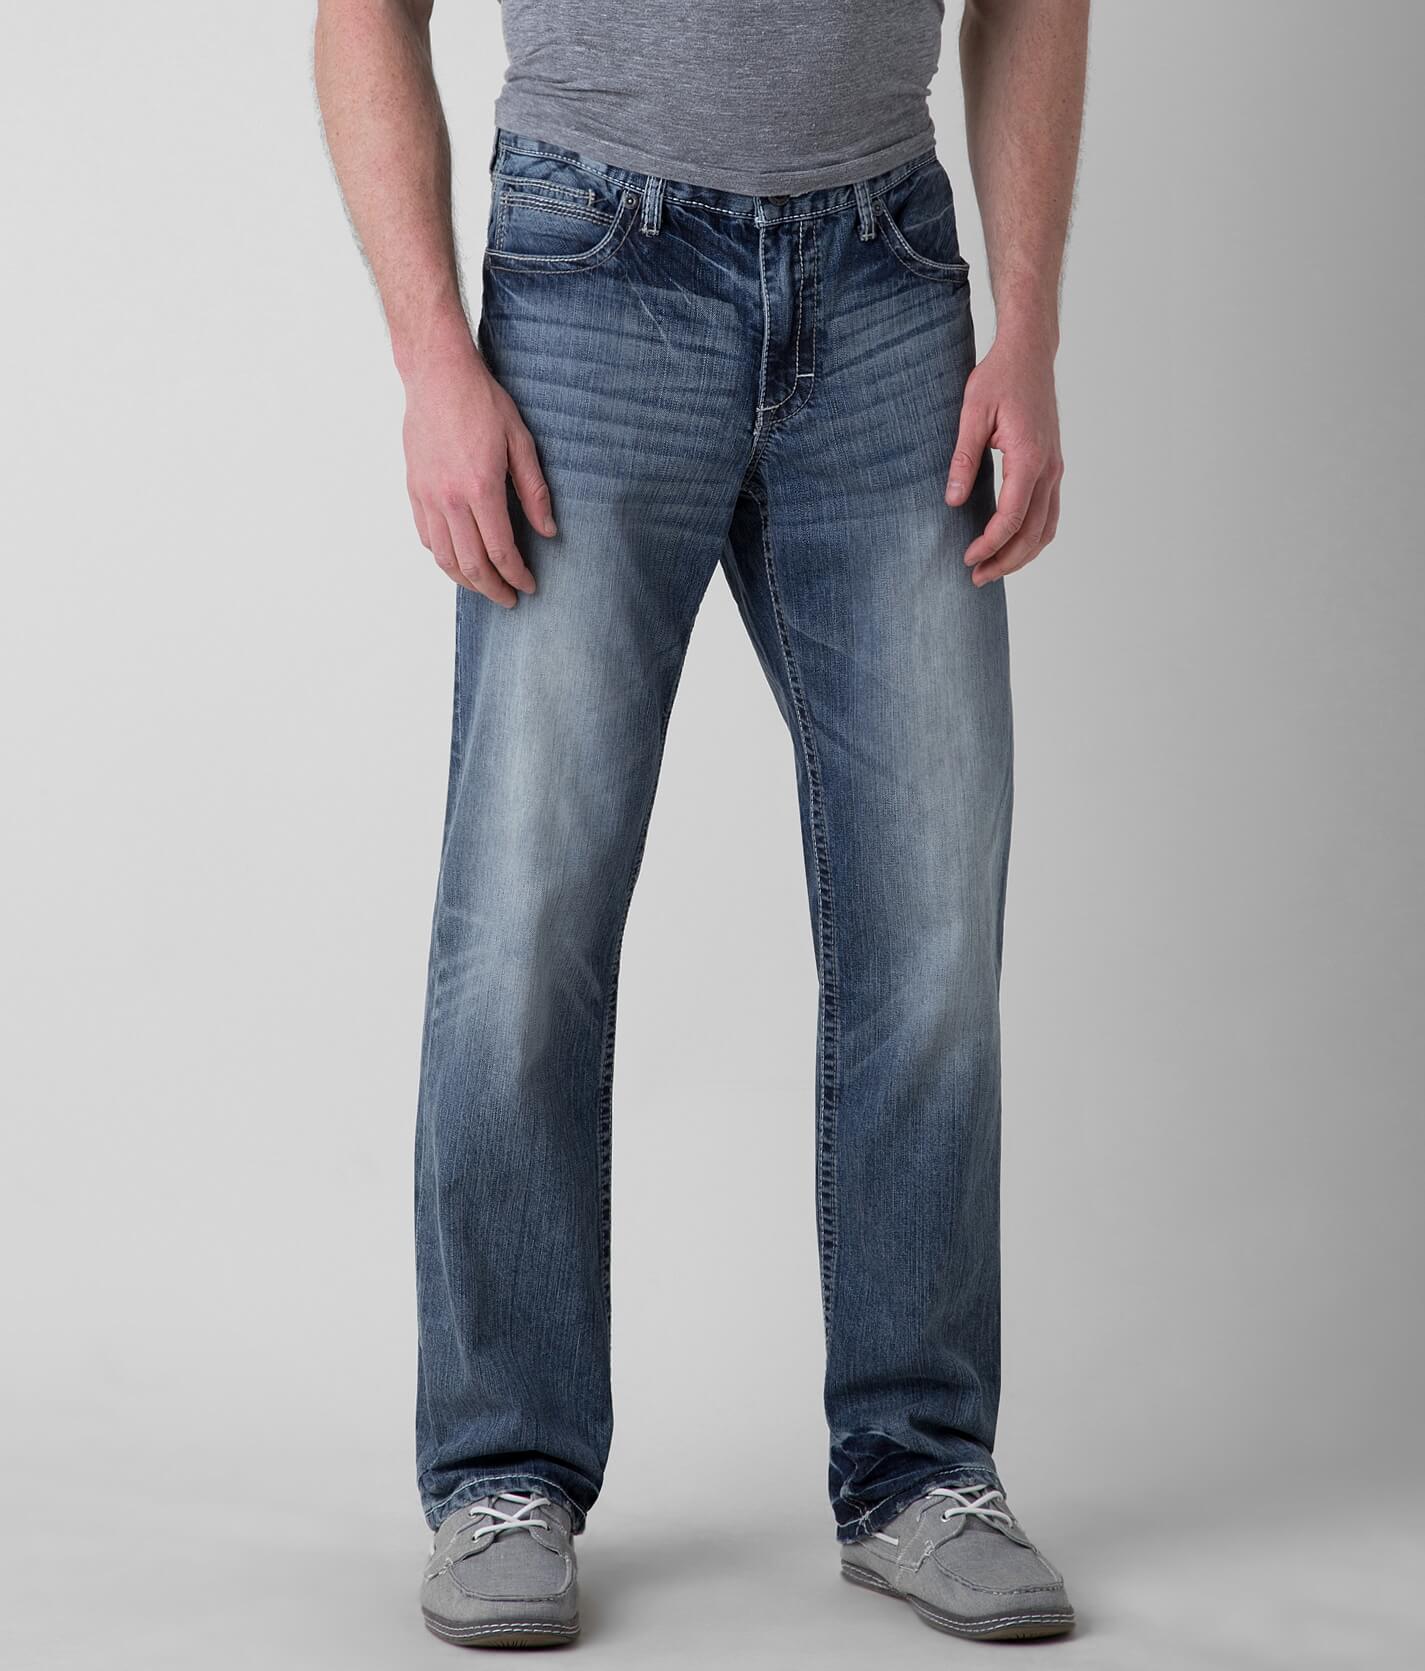 BKE Ryan Straight Jean - Men's Jeans in 